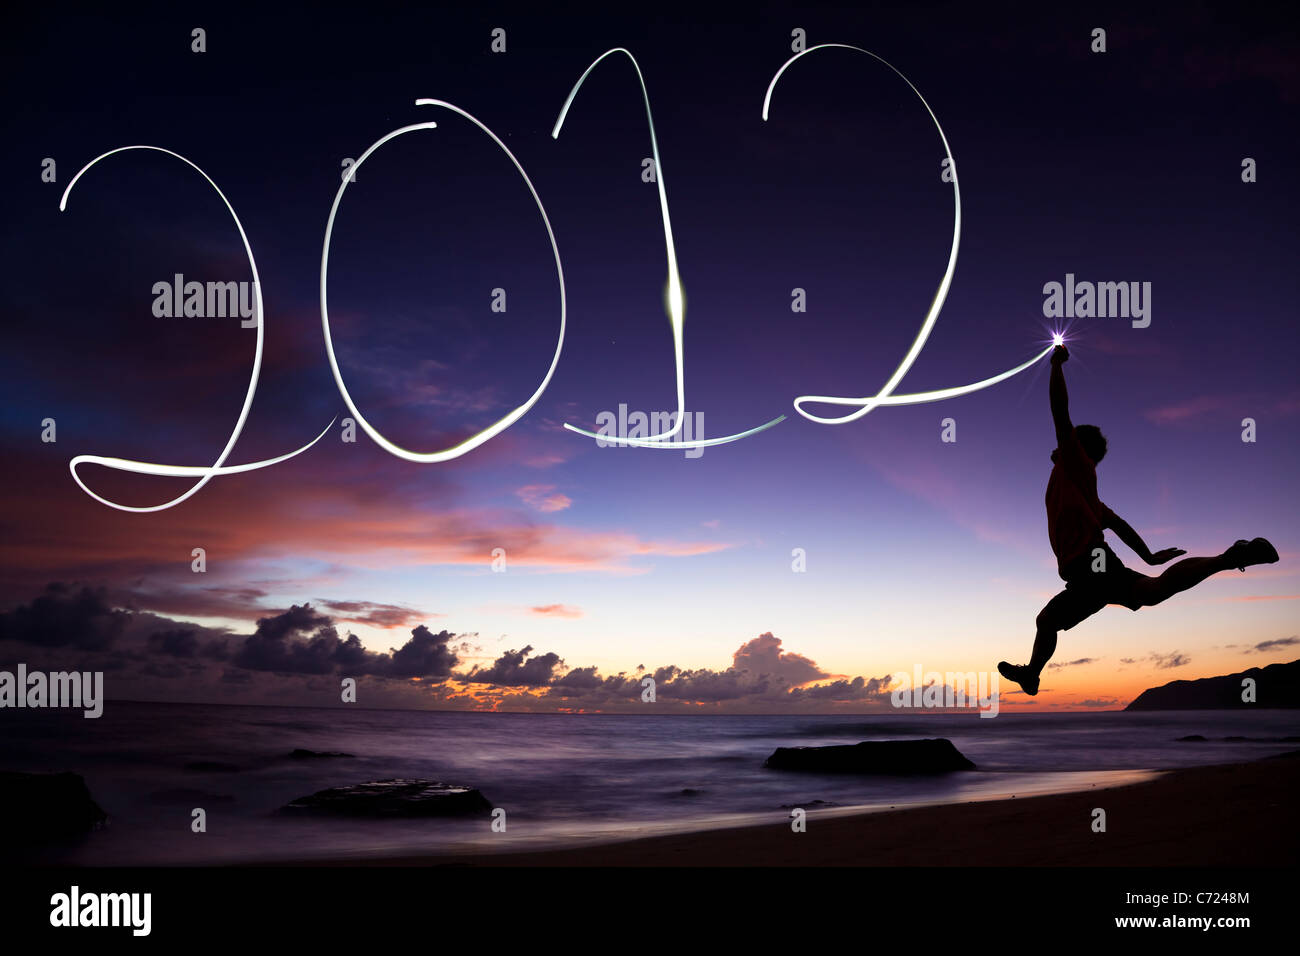 Feliz año nuevo 2012. joven saltando y dibujo 2012 por linterna en el aire en la playa antes de amanecer Foto de stock